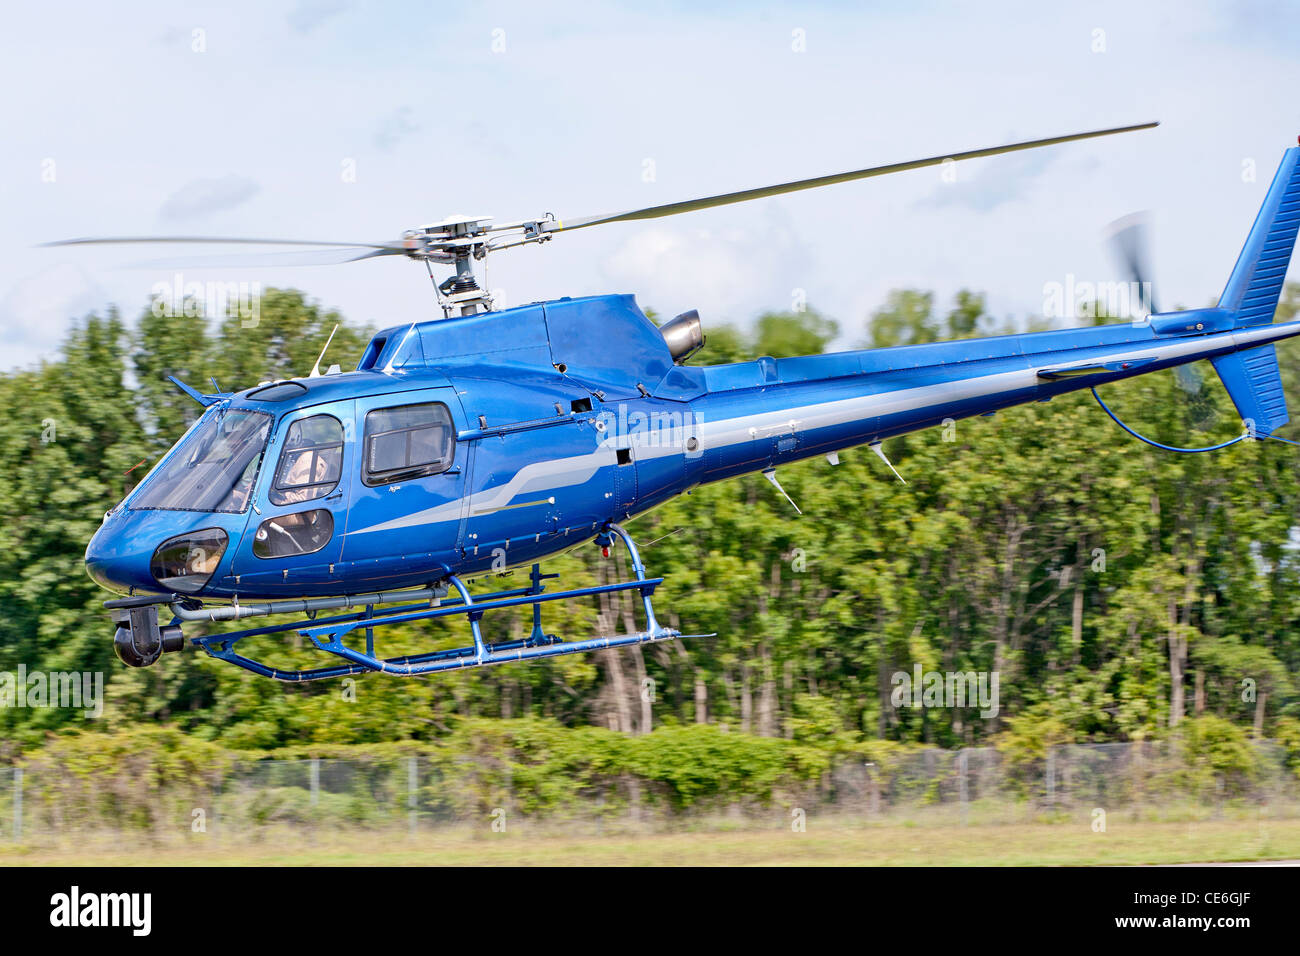 Una de helicópteros Eurocopter helicóptero vuela a poca distancia del suelo. Foto de stock